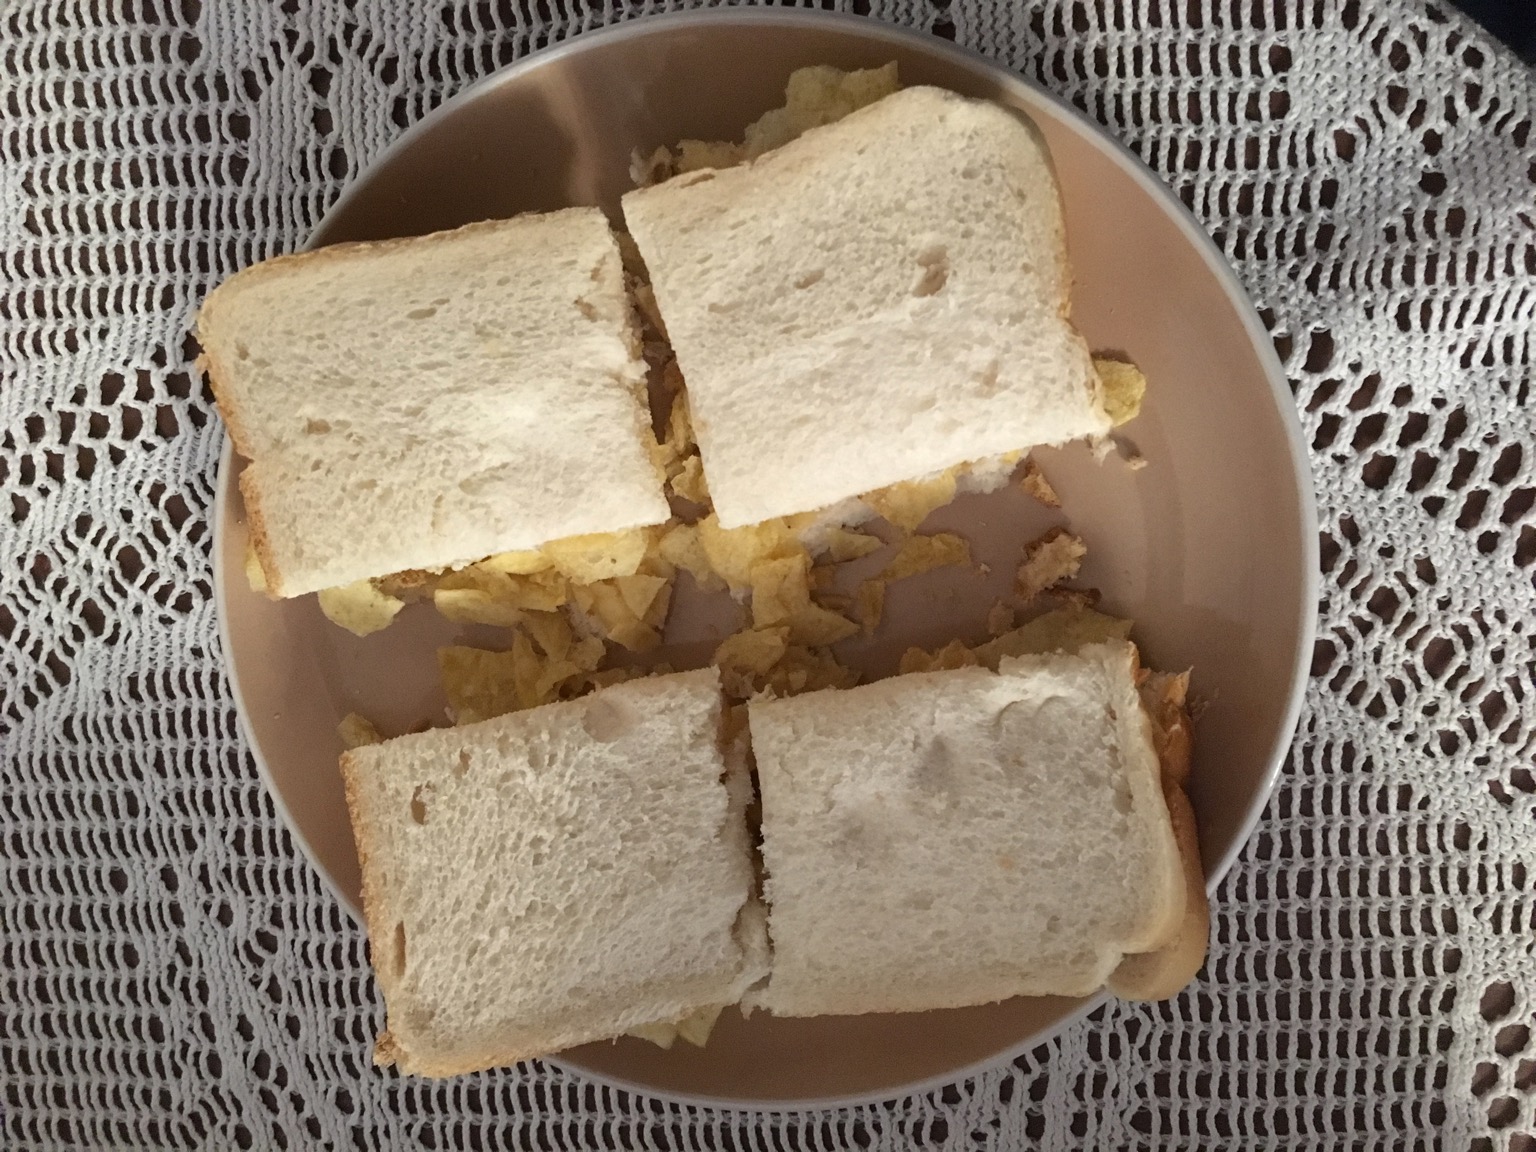 White crisp sandwich cut into quarters